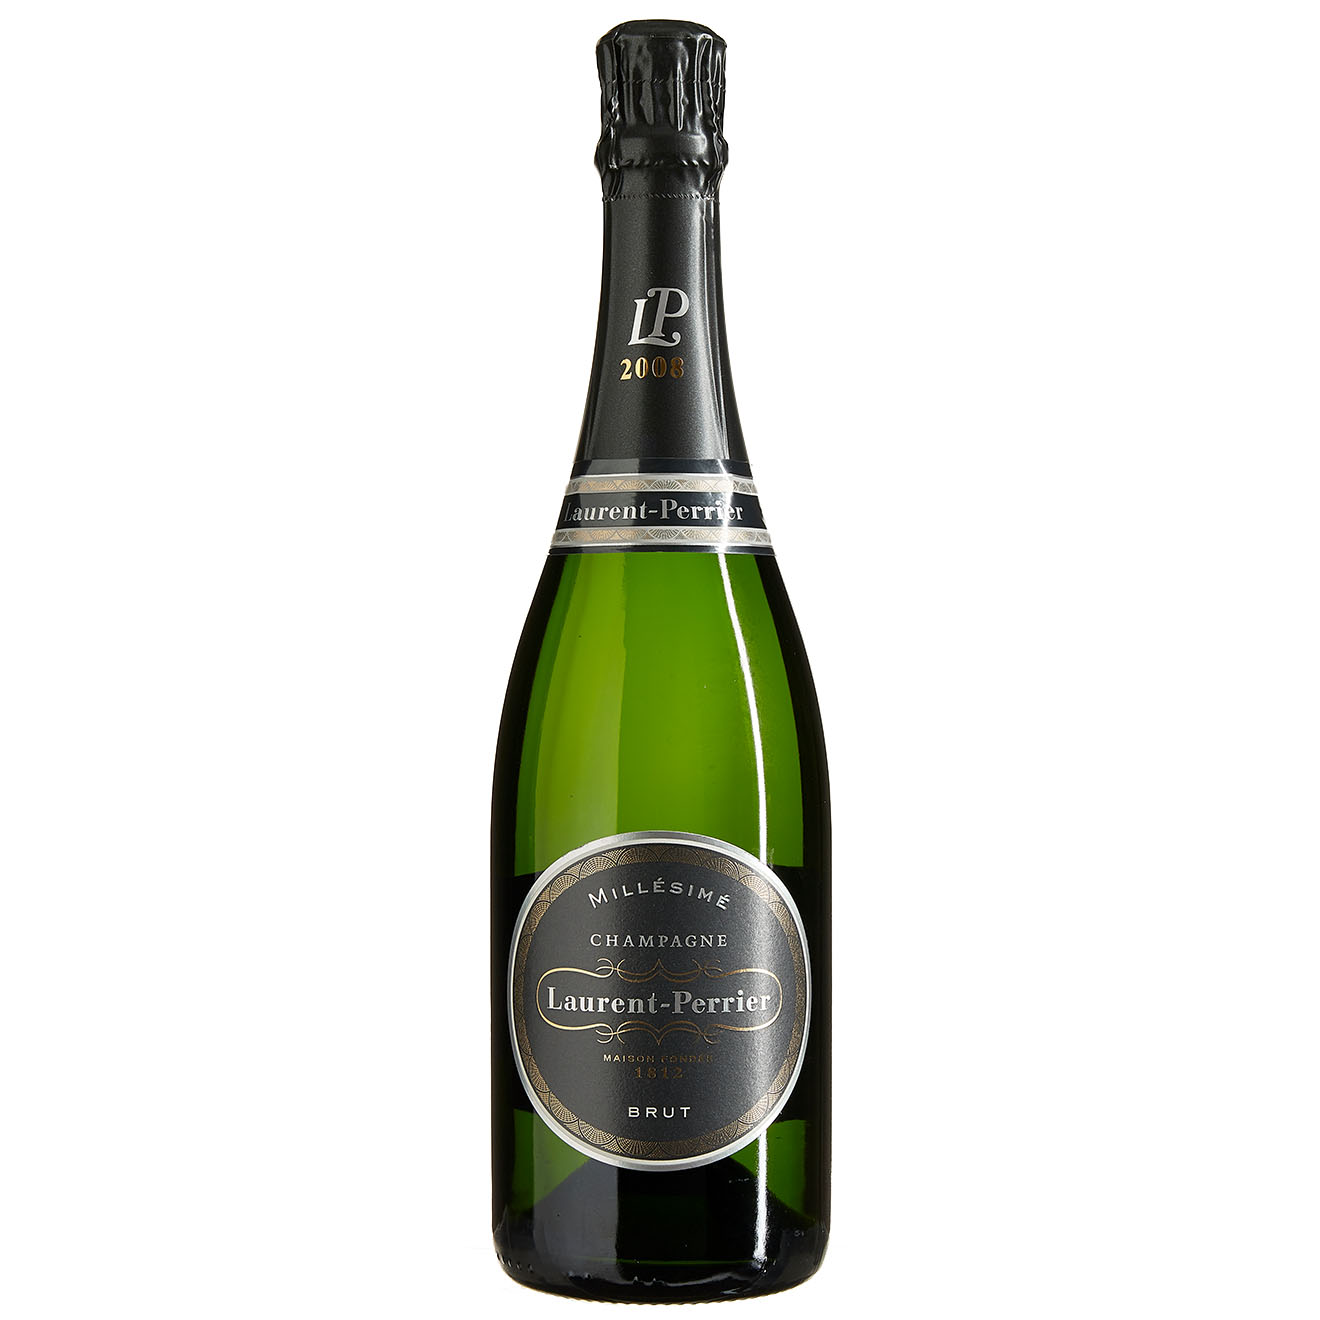 1 Champagne Brut Millésimé 2008 Laurent-Perrier 75cl